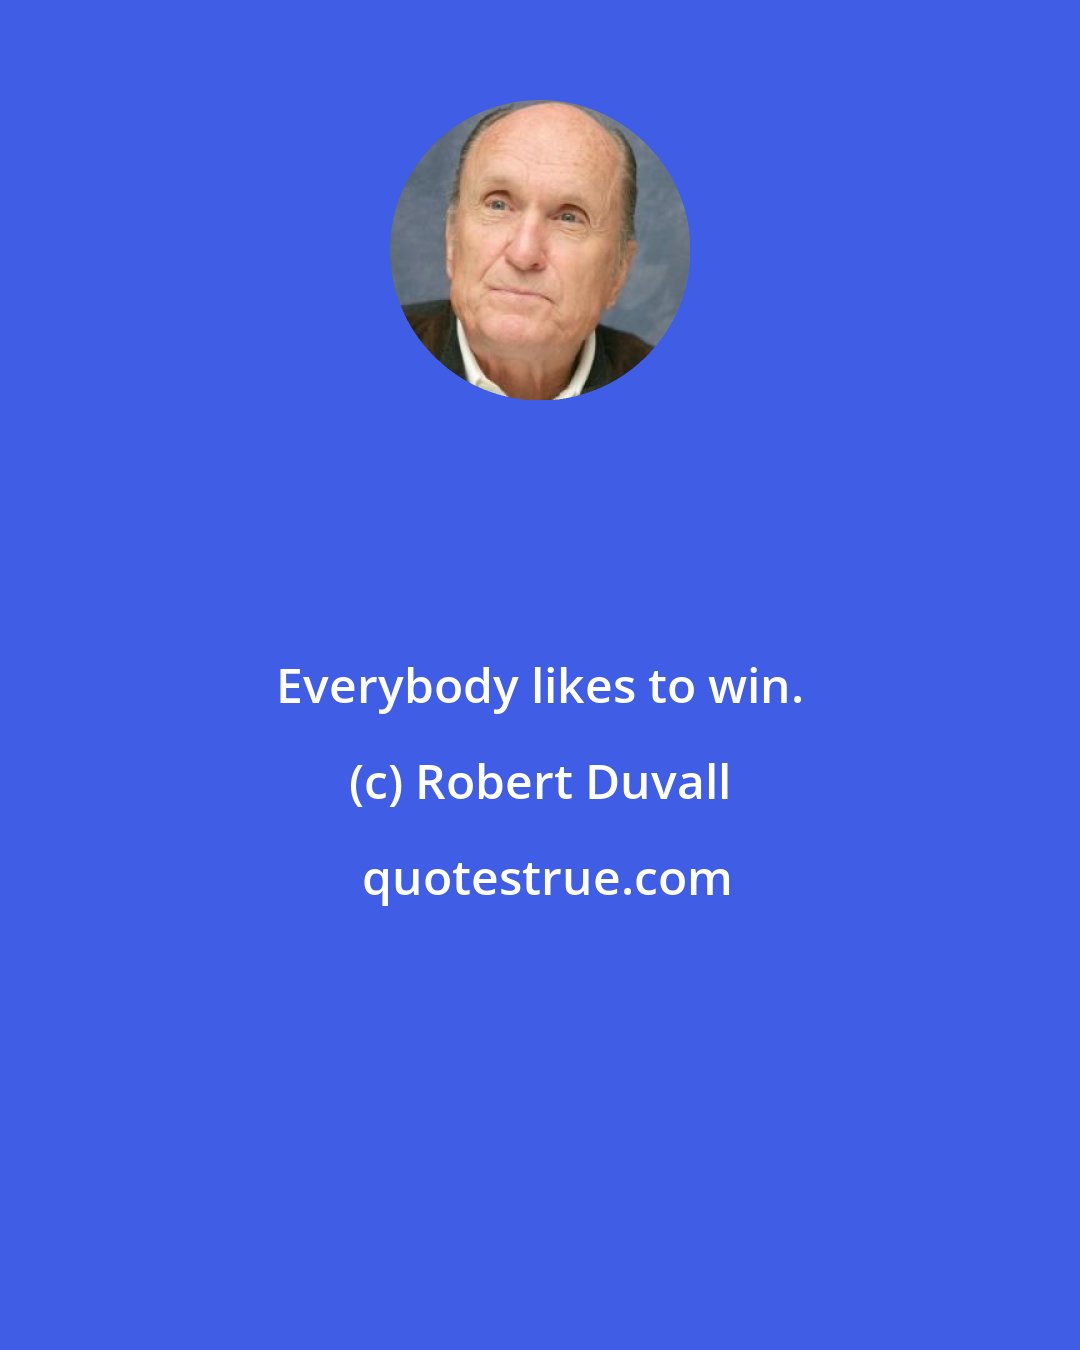 Robert Duvall: Everybody likes to win.